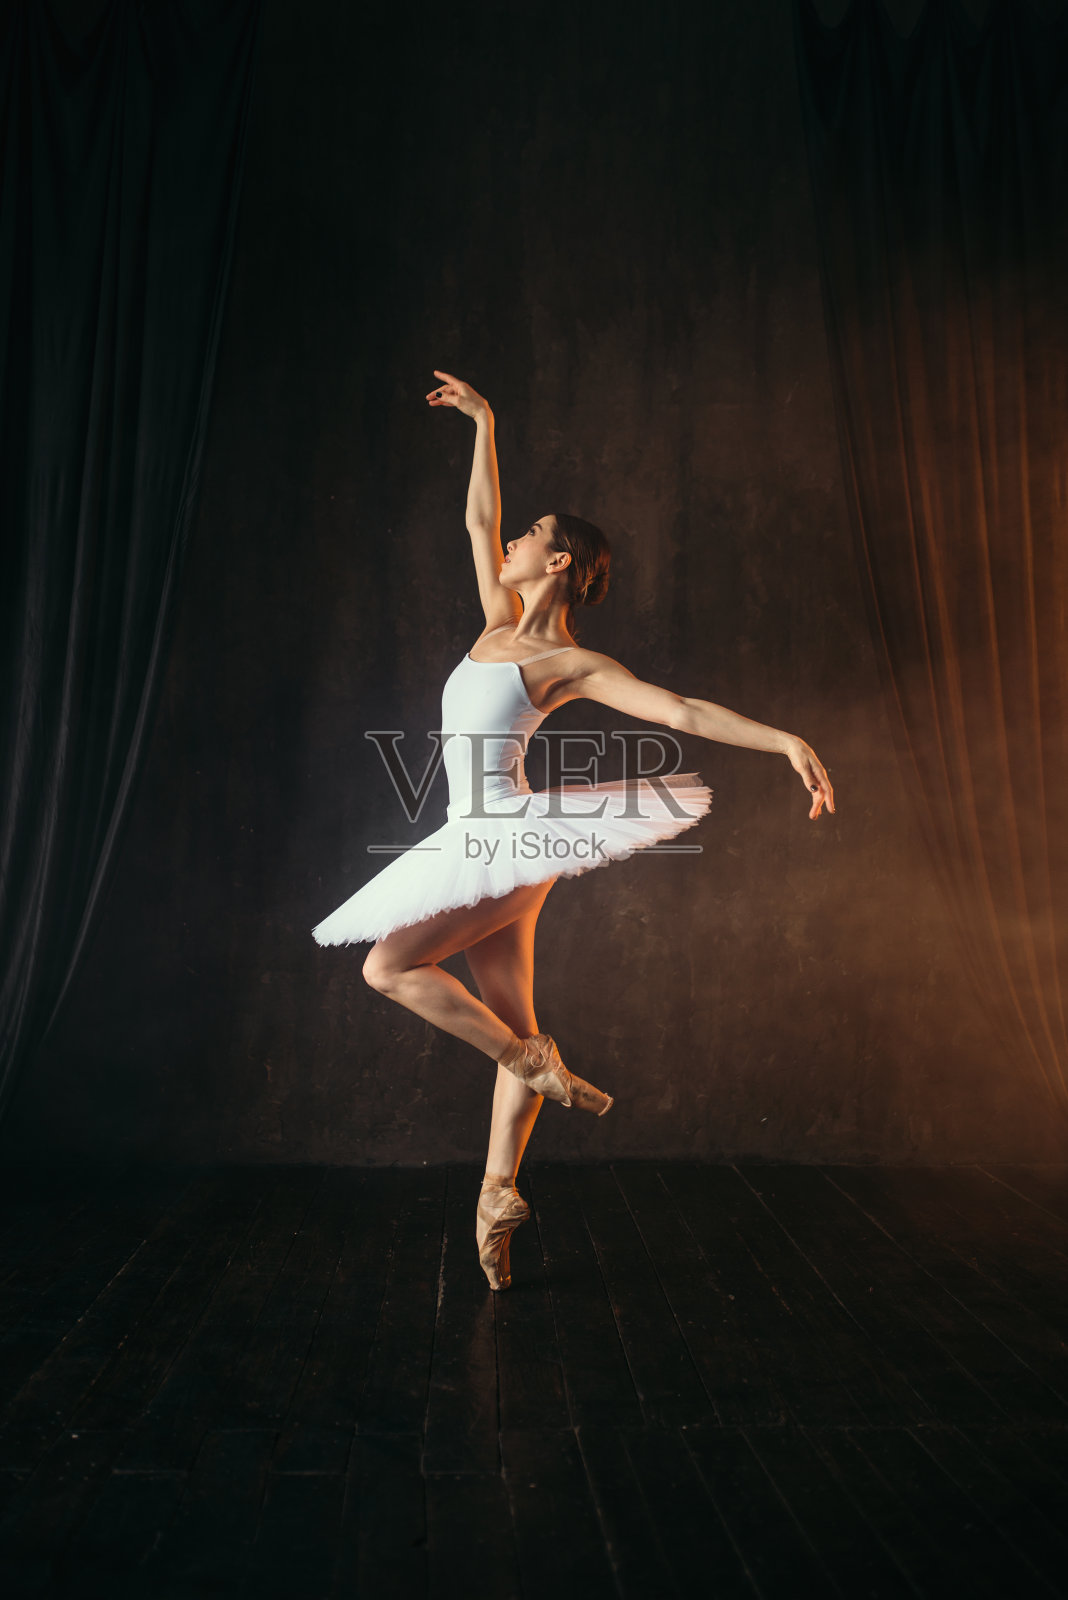 穿着白色裙子和尖头鞋的芭蕾舞者跳舞照片摄影图片